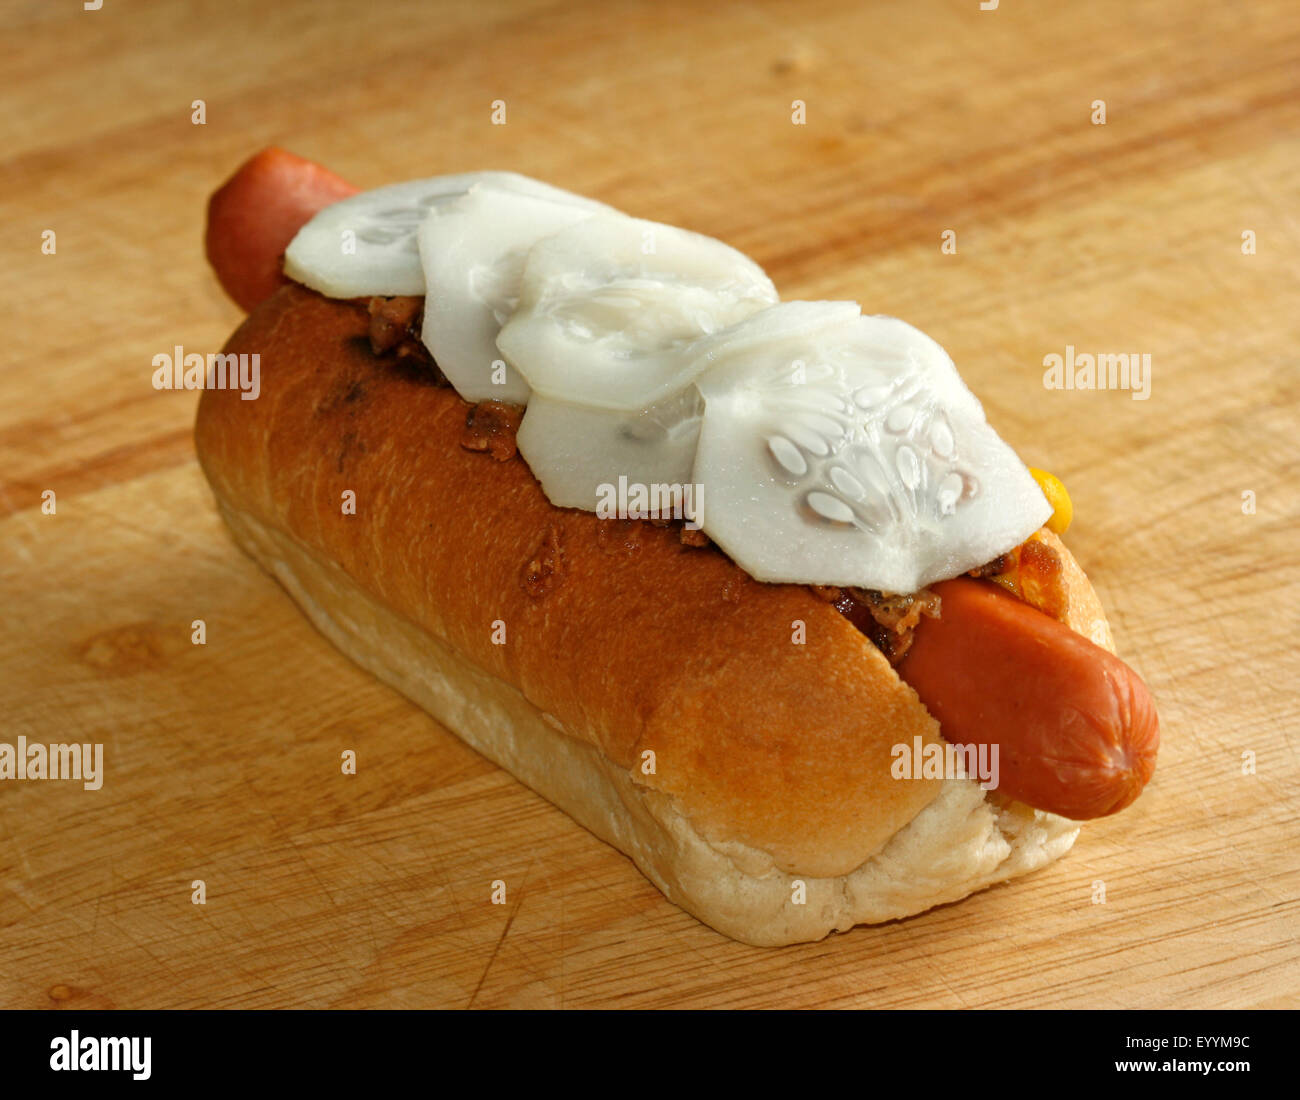 Un hot dog style danois avec du ketchup, moutarde, rémoulade, oignons frits et concombre cornichon Banque D'Images